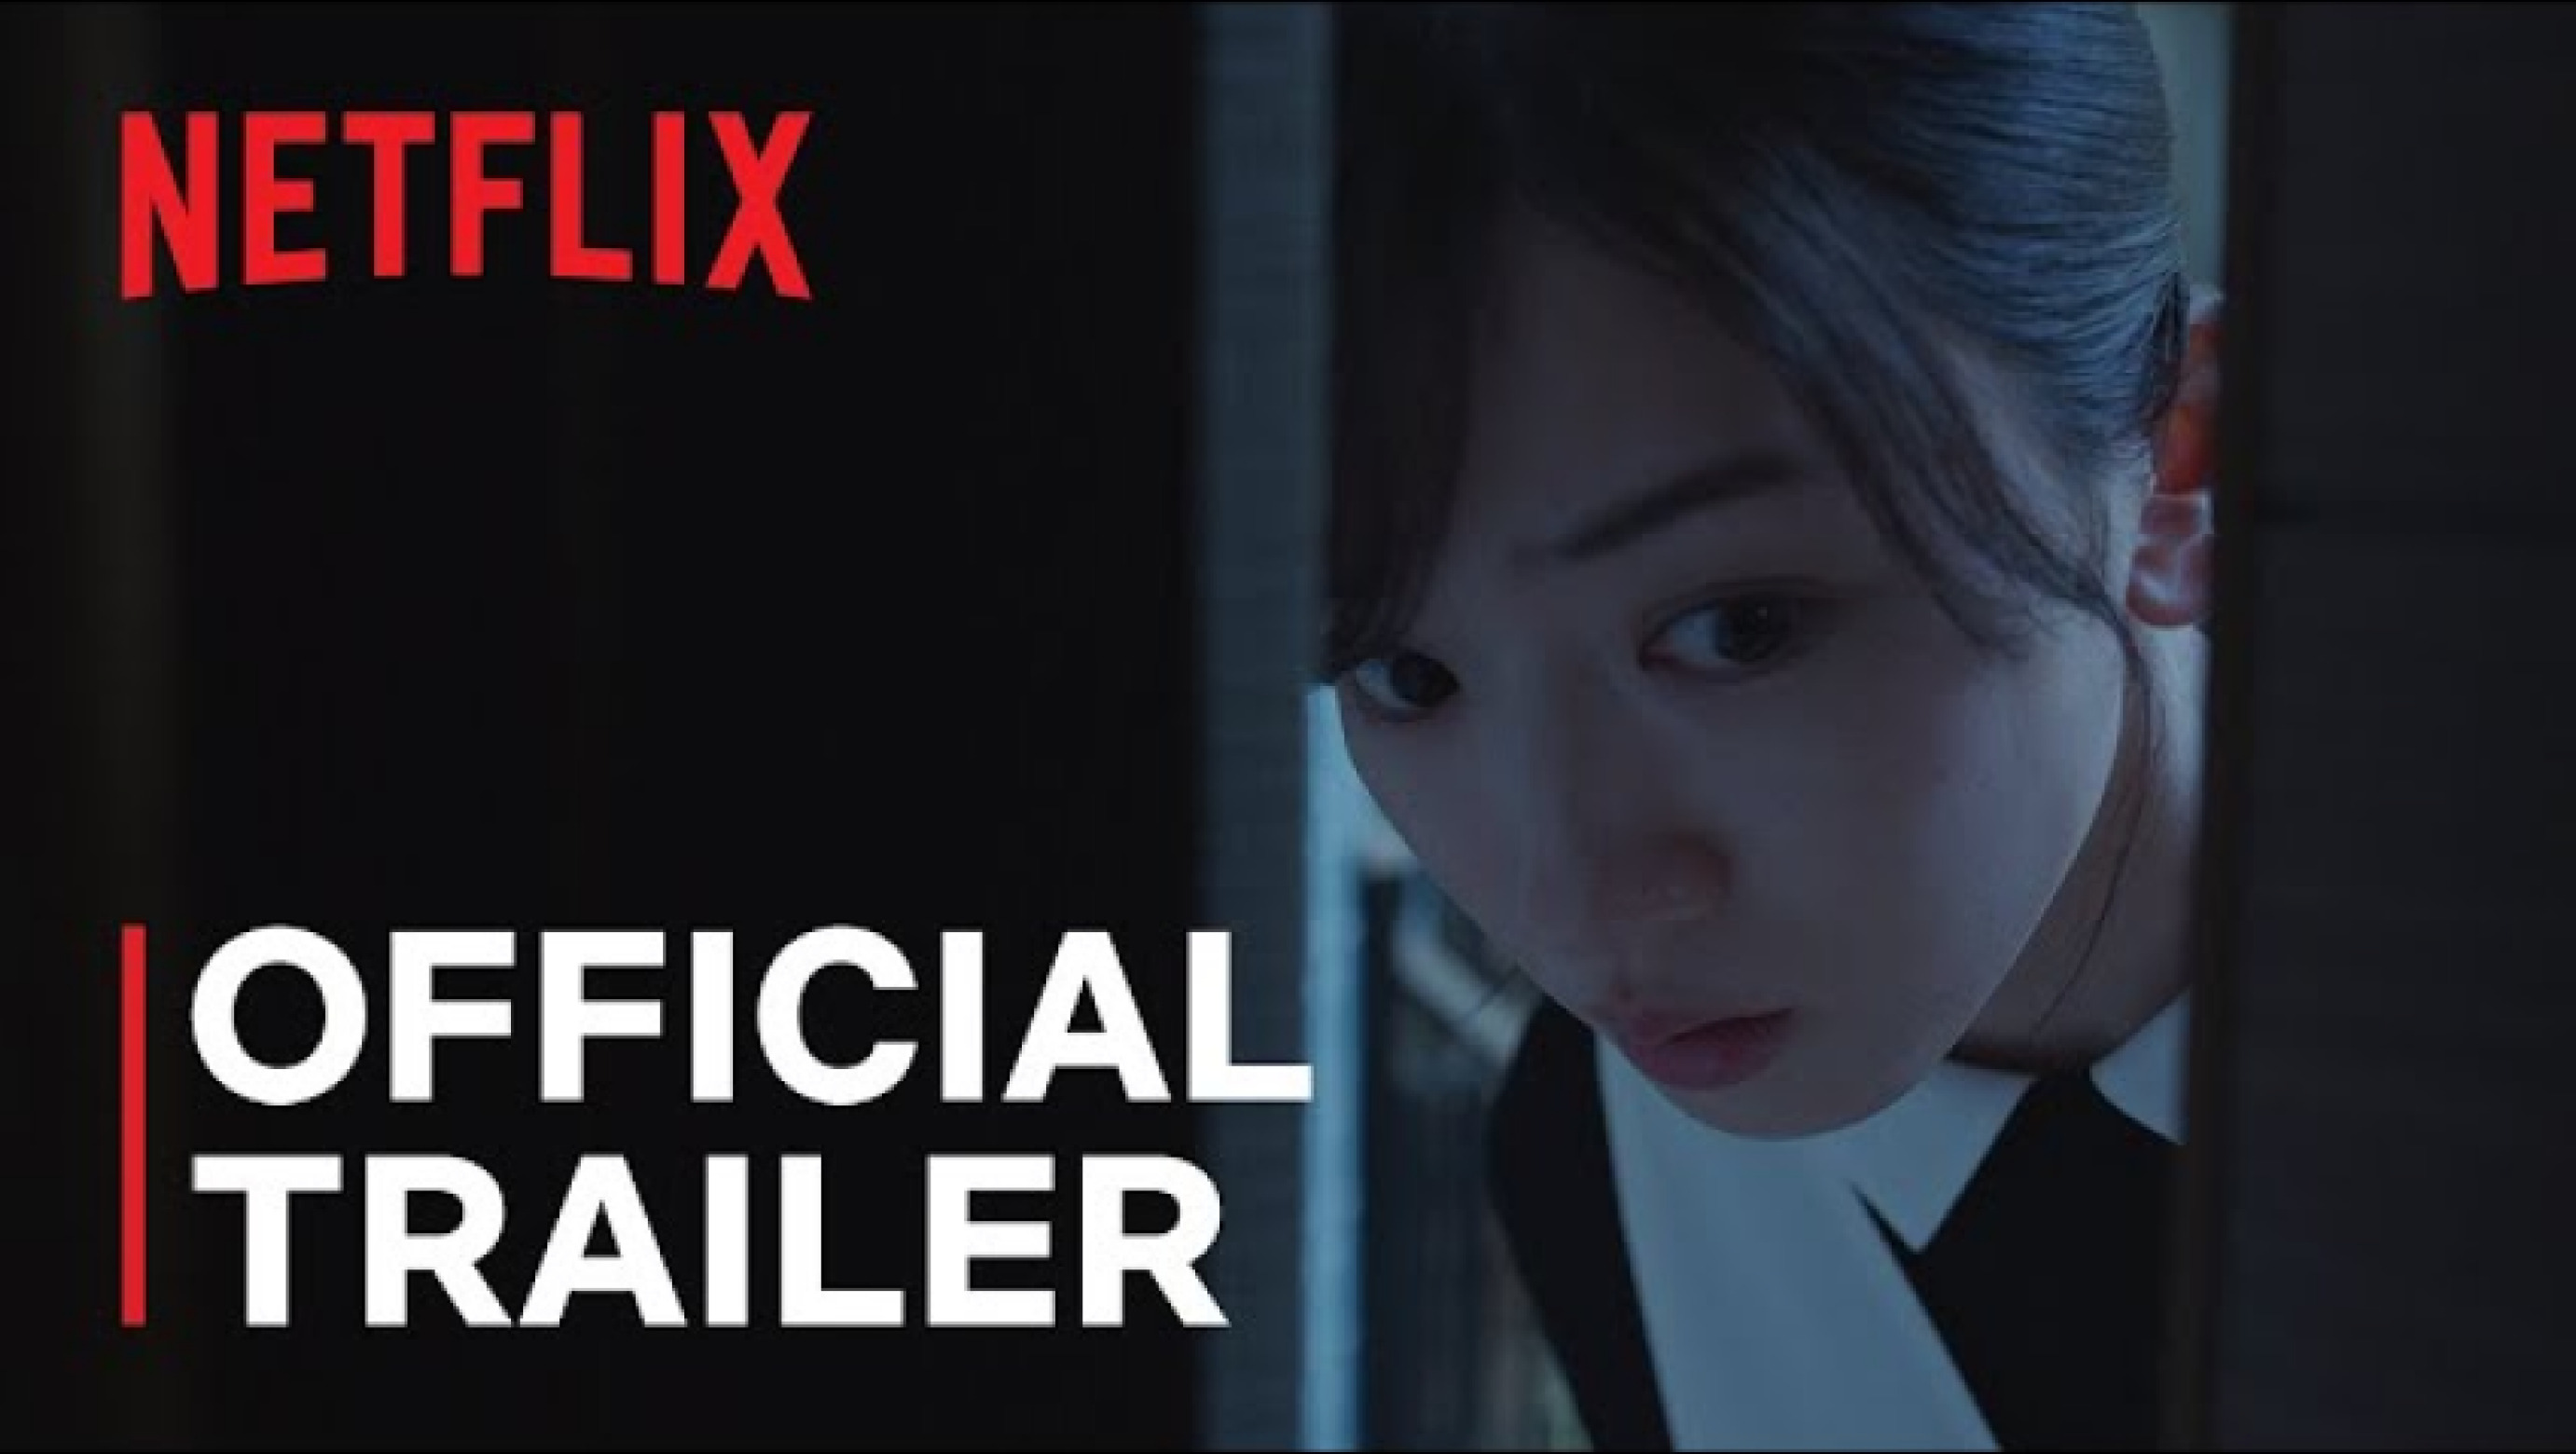 Netflix Sans Official Trailer